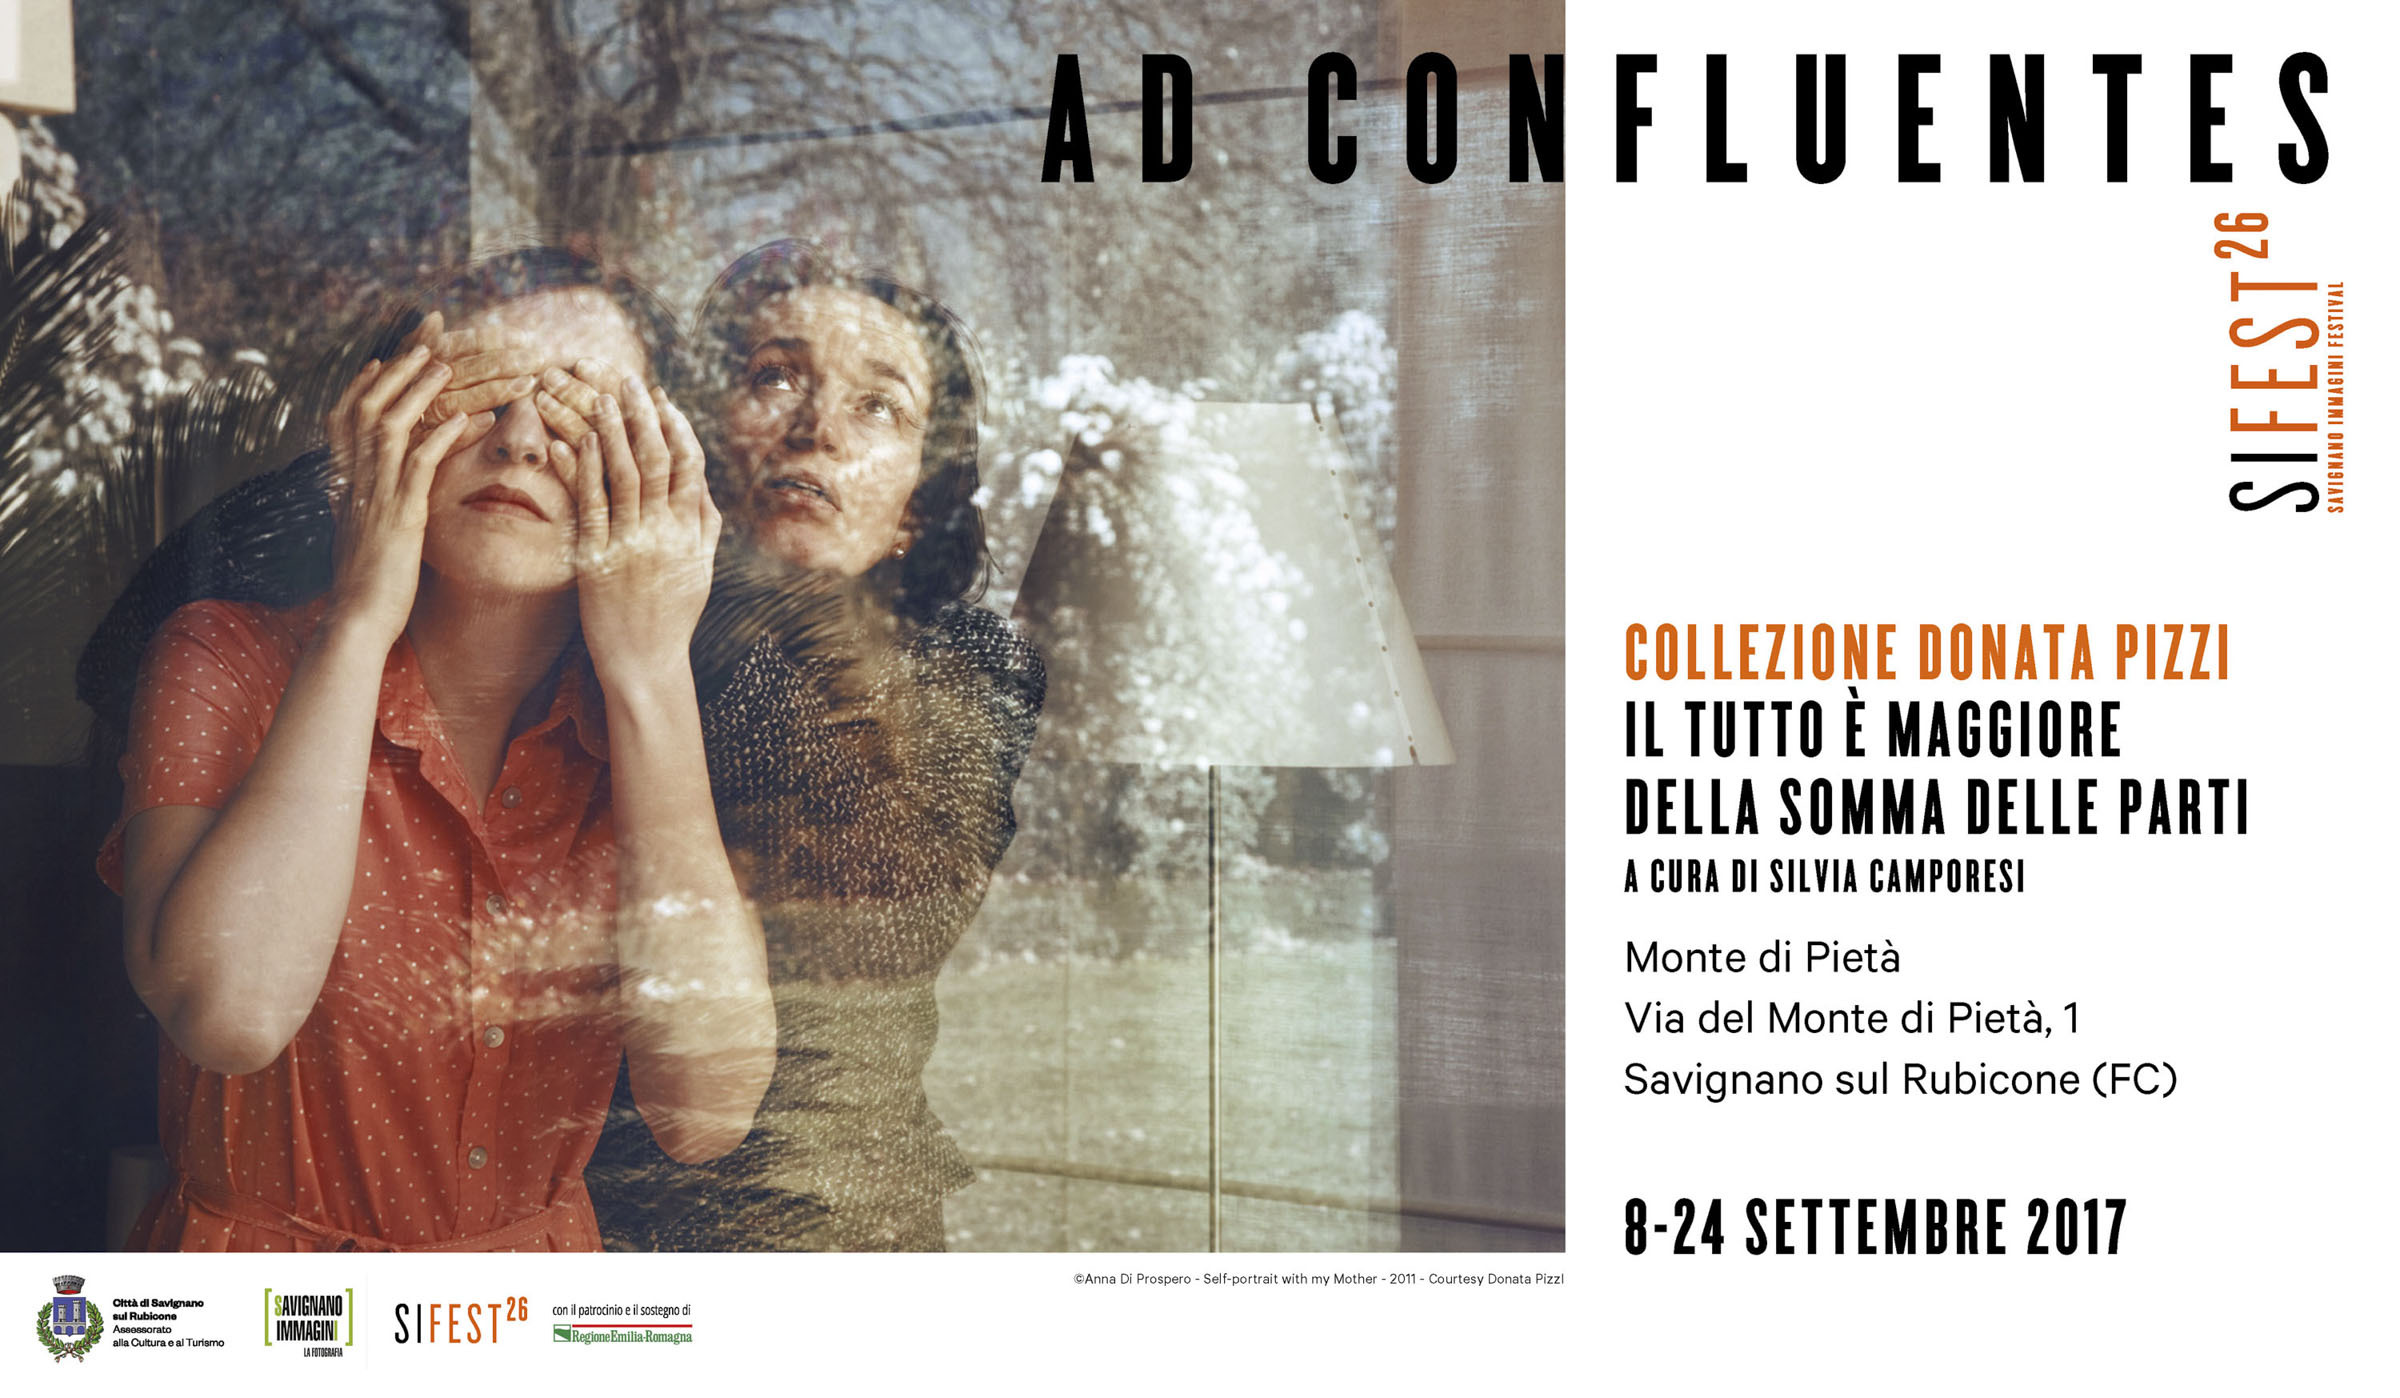 #Alessandra_Spranzi: "Collezione Donata Pizzi" at SI FEST, Savignano sul Rubicone - 